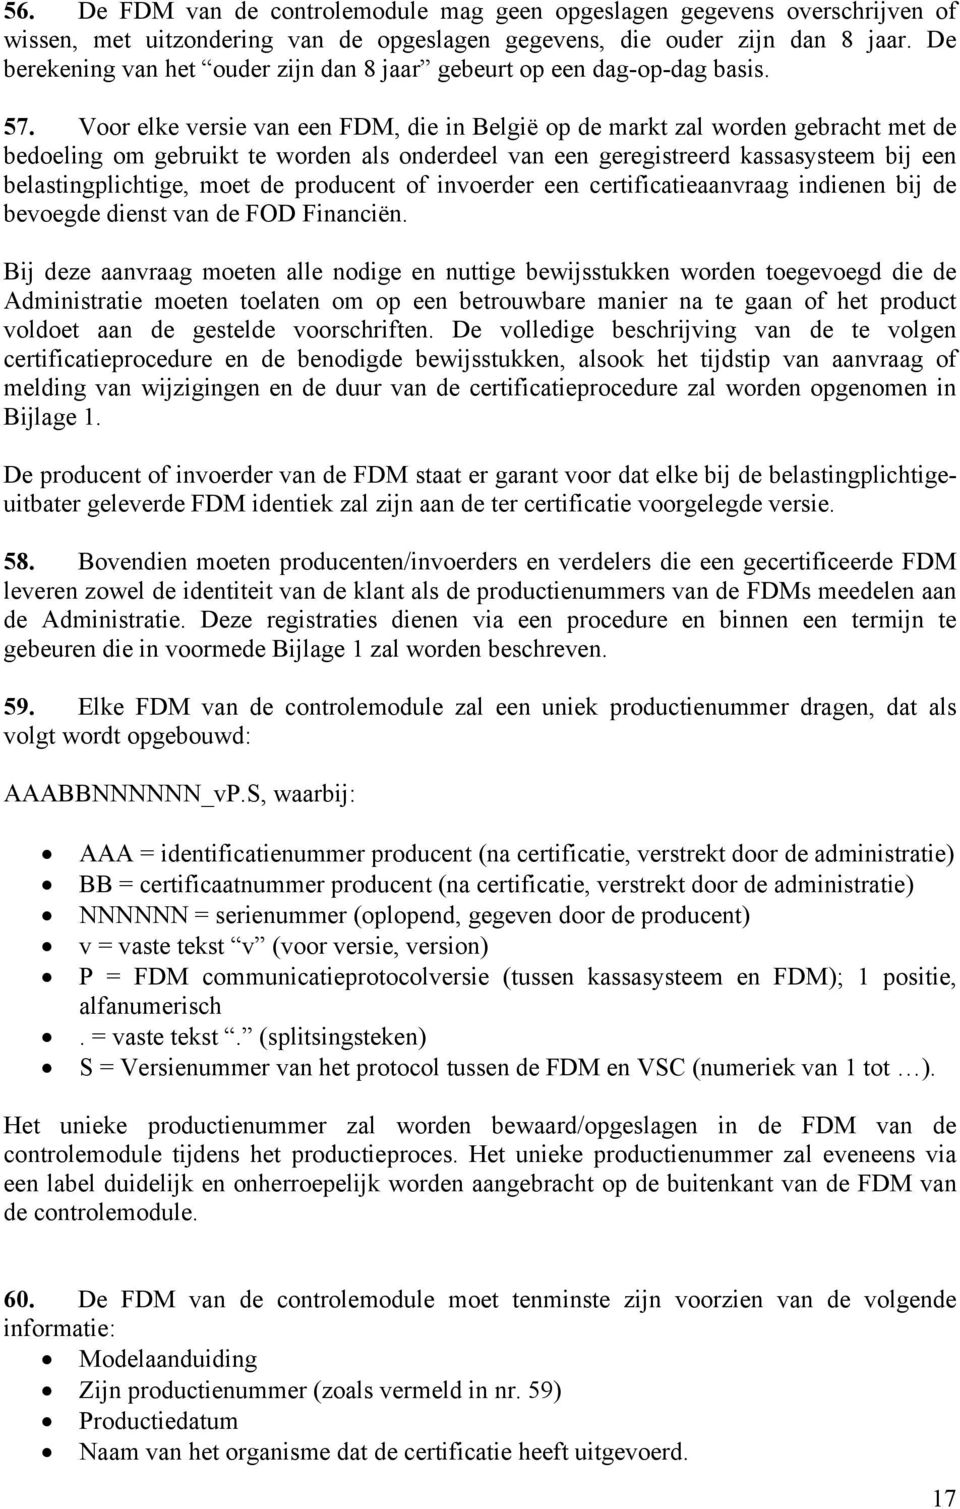 Voor elke versie van een FDM, die in België op de markt zal worden gebracht met de bedoeling om gebruikt te worden als onderdeel van een geregistreerd kassasysteem bij een belastingplichtige, moet de